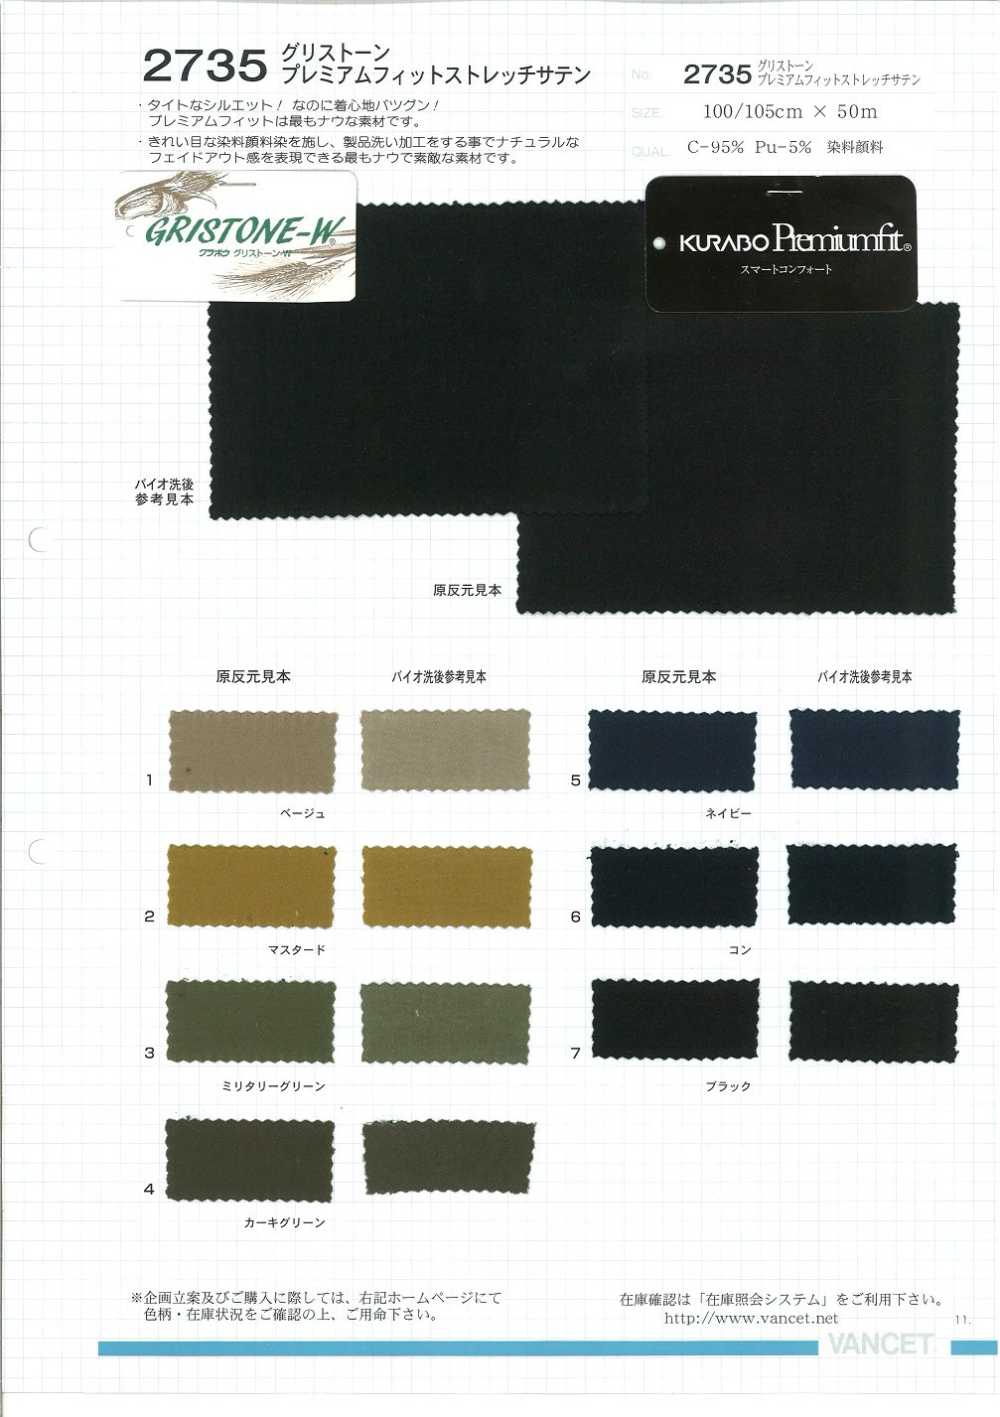 2735 Grisstone Premium Fit Stretch Satin[Textile / Fabric] VANCET